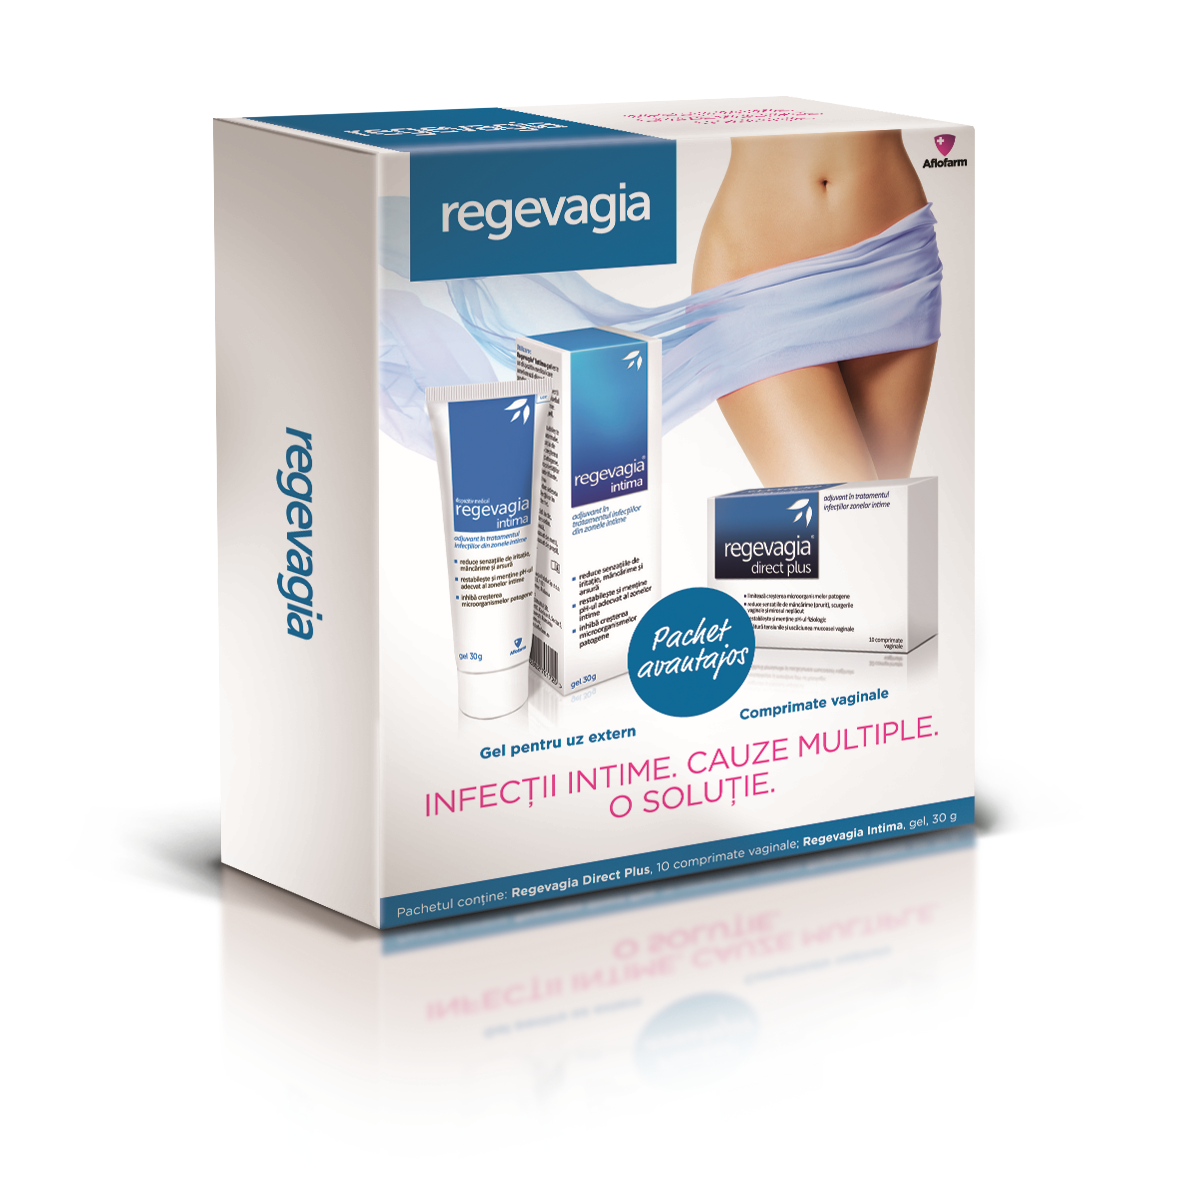 Pachet Regevagia Direct Plus, 10 tablete vaginale + Regevagia gel intim, 30g, Aflofarm